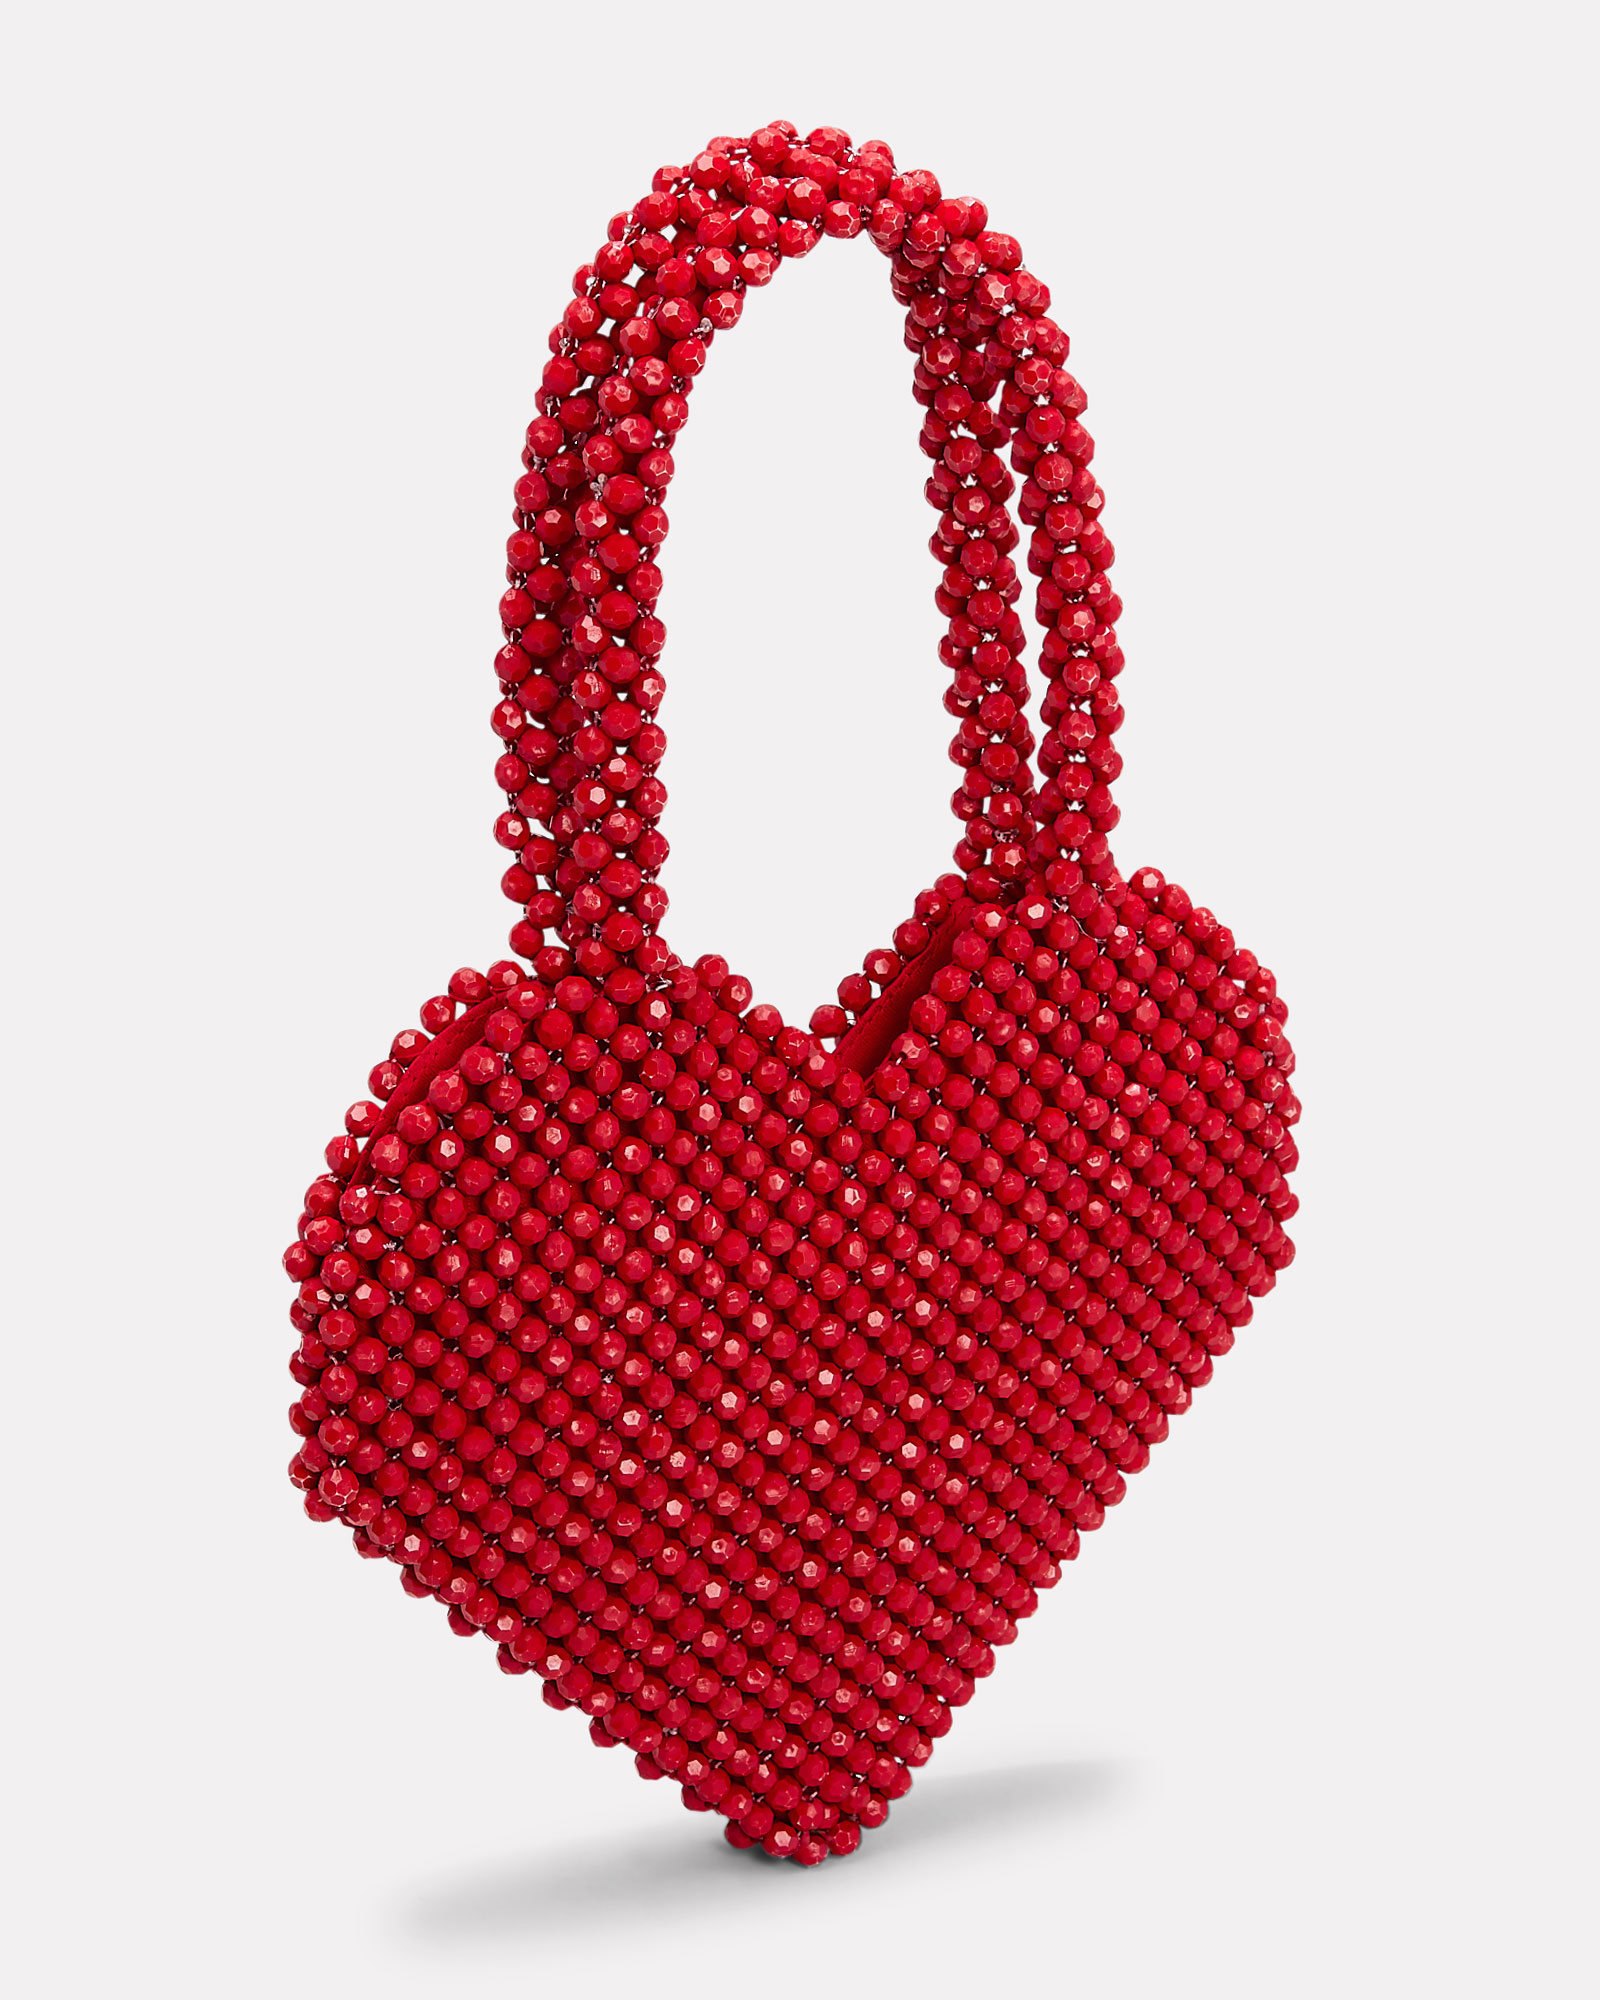 Designer Red Heart Shaped Bag | Loeffler Randall